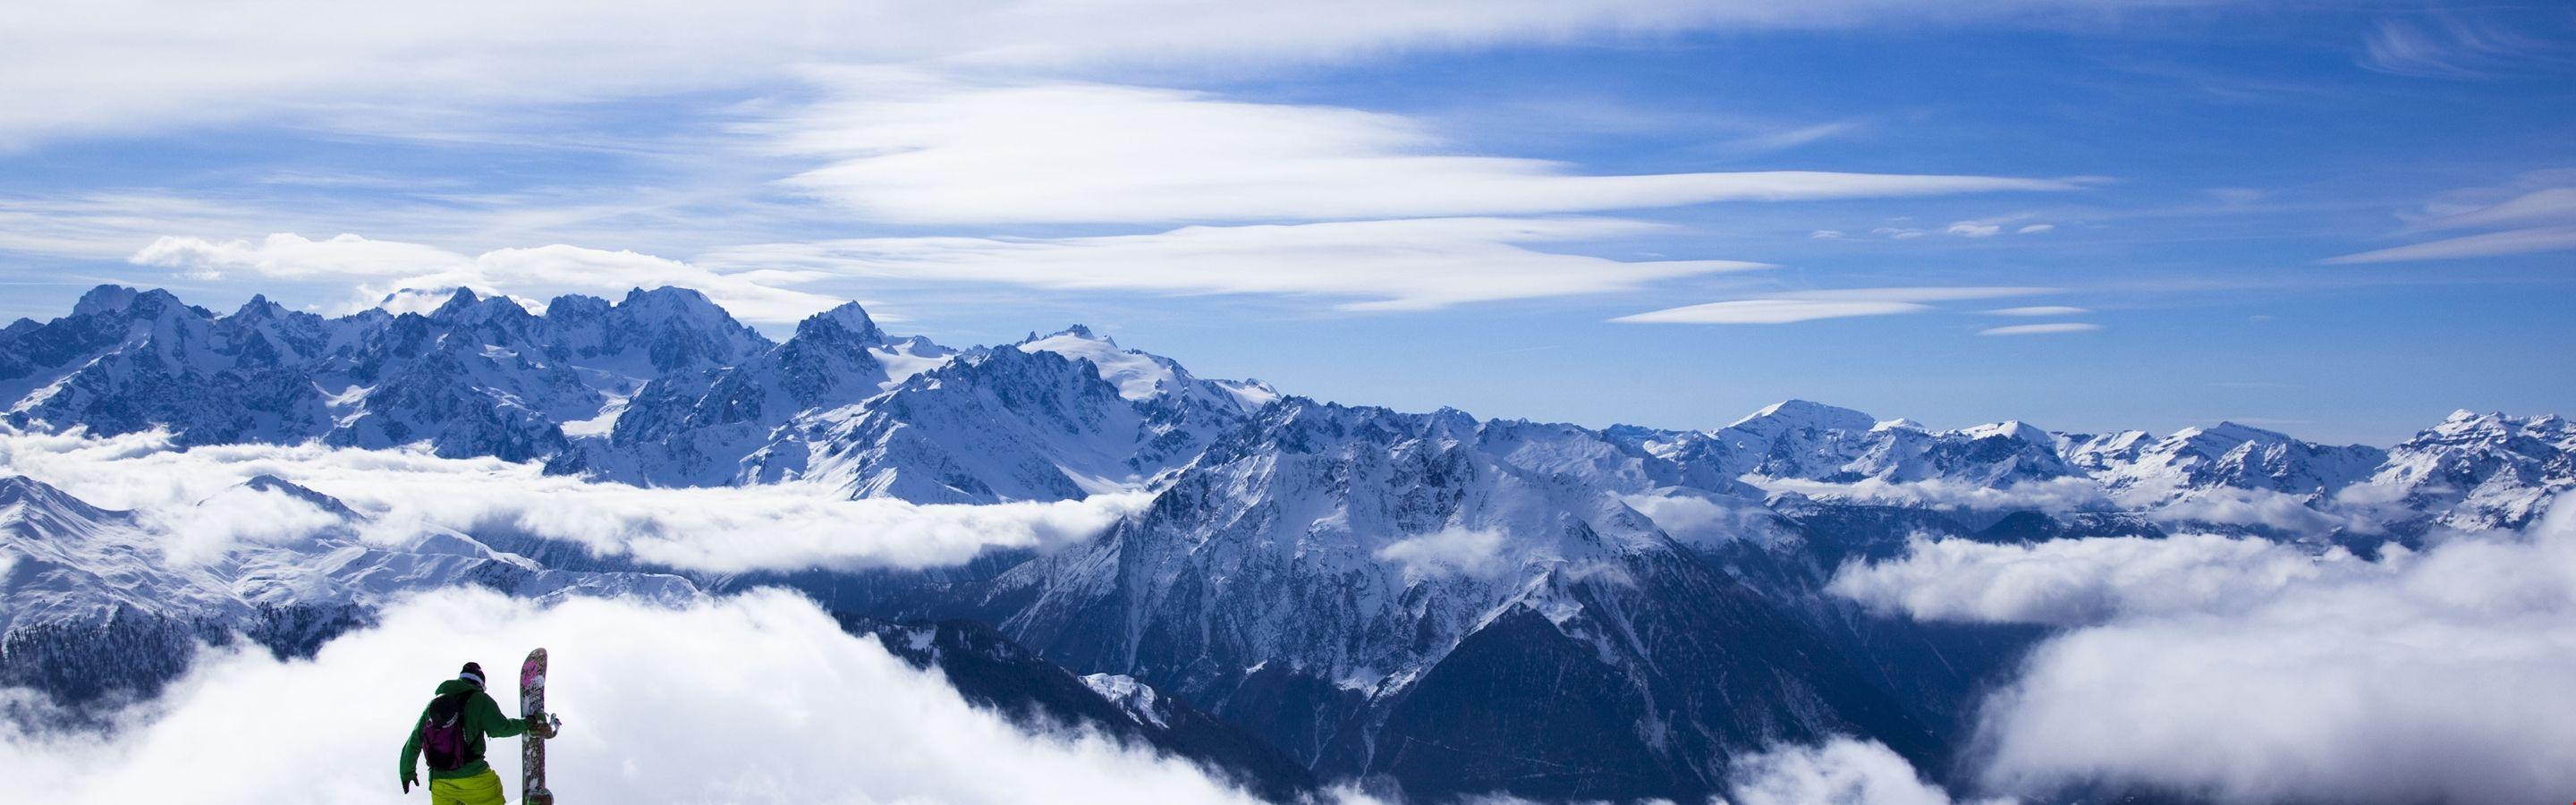 2880x900 Himalayas, 5k, 4k hình nền, 8k, Kangchenjunga, trượt tuyết